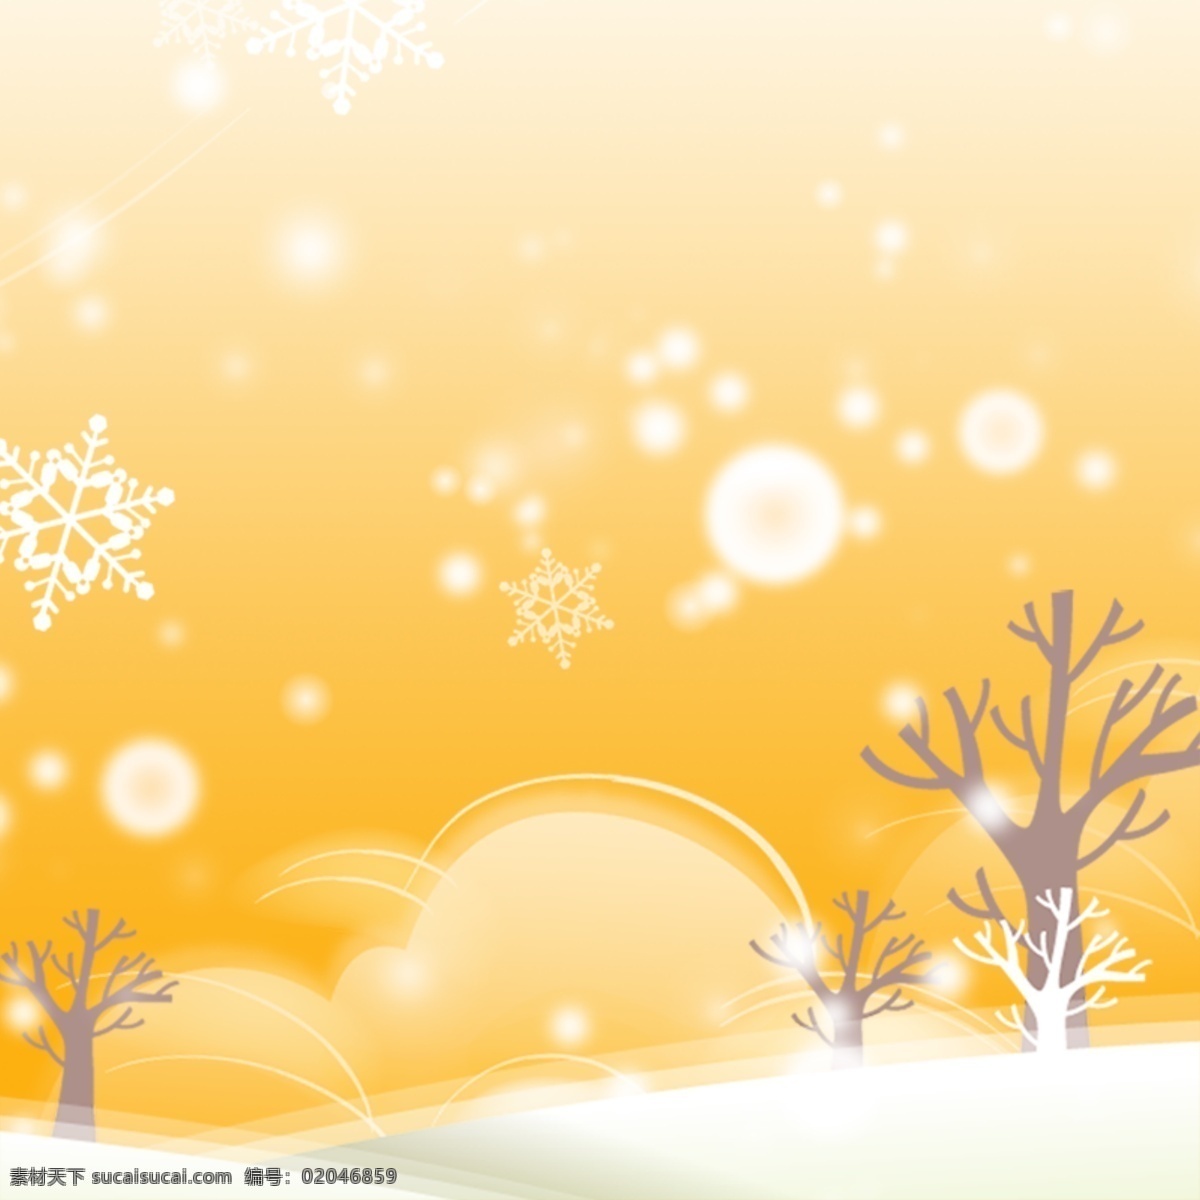 冬季背景 冬季插画 冬天 广告设计模板 源文件 冬季 氛围 模板下载 冬季氛围 写意背景 黄色